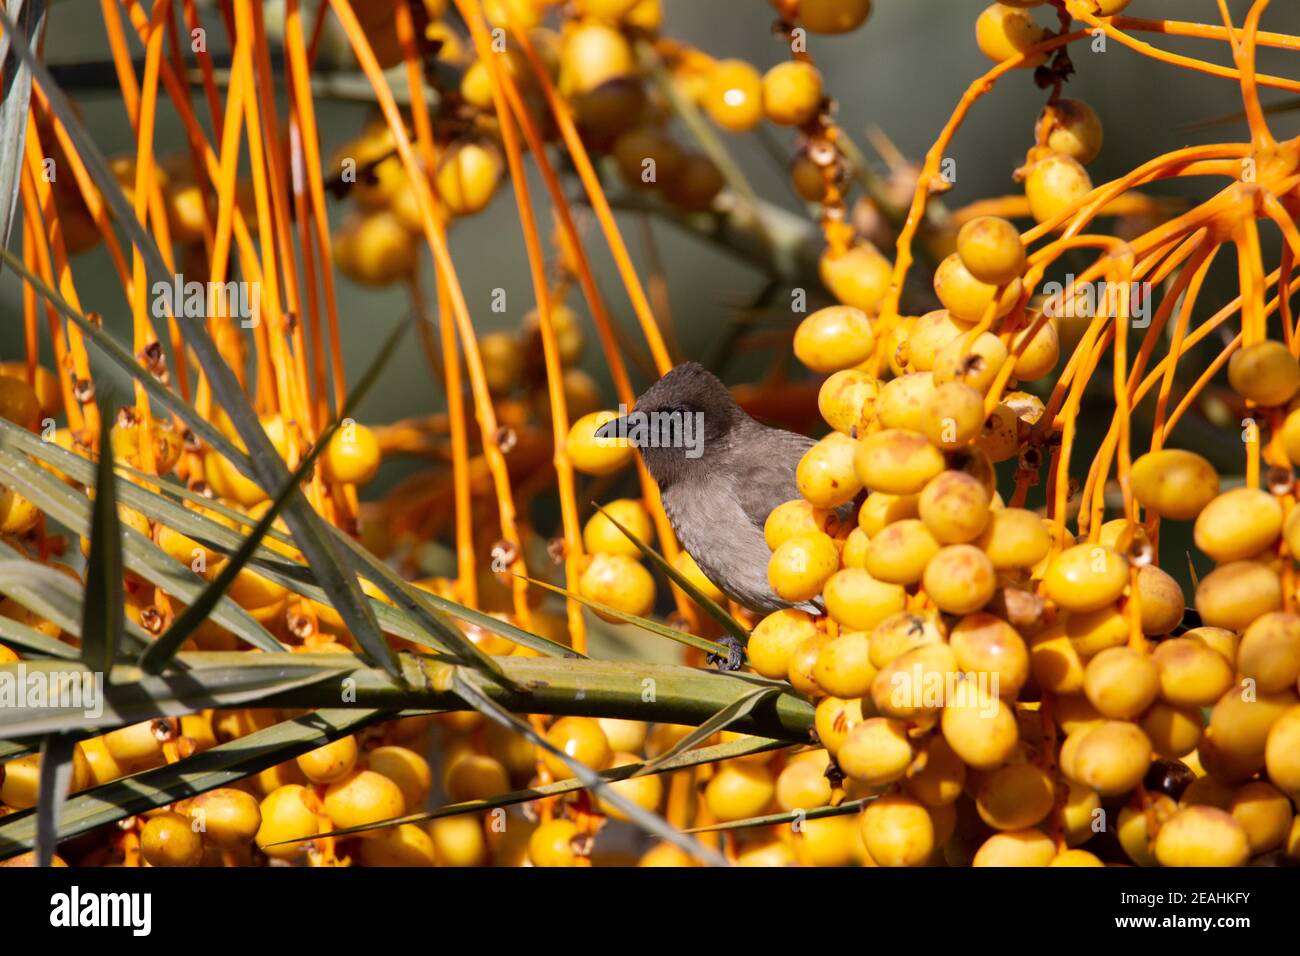 Gemeiner Bulbul (Pycnonotus barbatus) Ein gewöhnlicher Bulbul in einer orangefarbenen und gelben Dattelpalme Baum Stockfoto